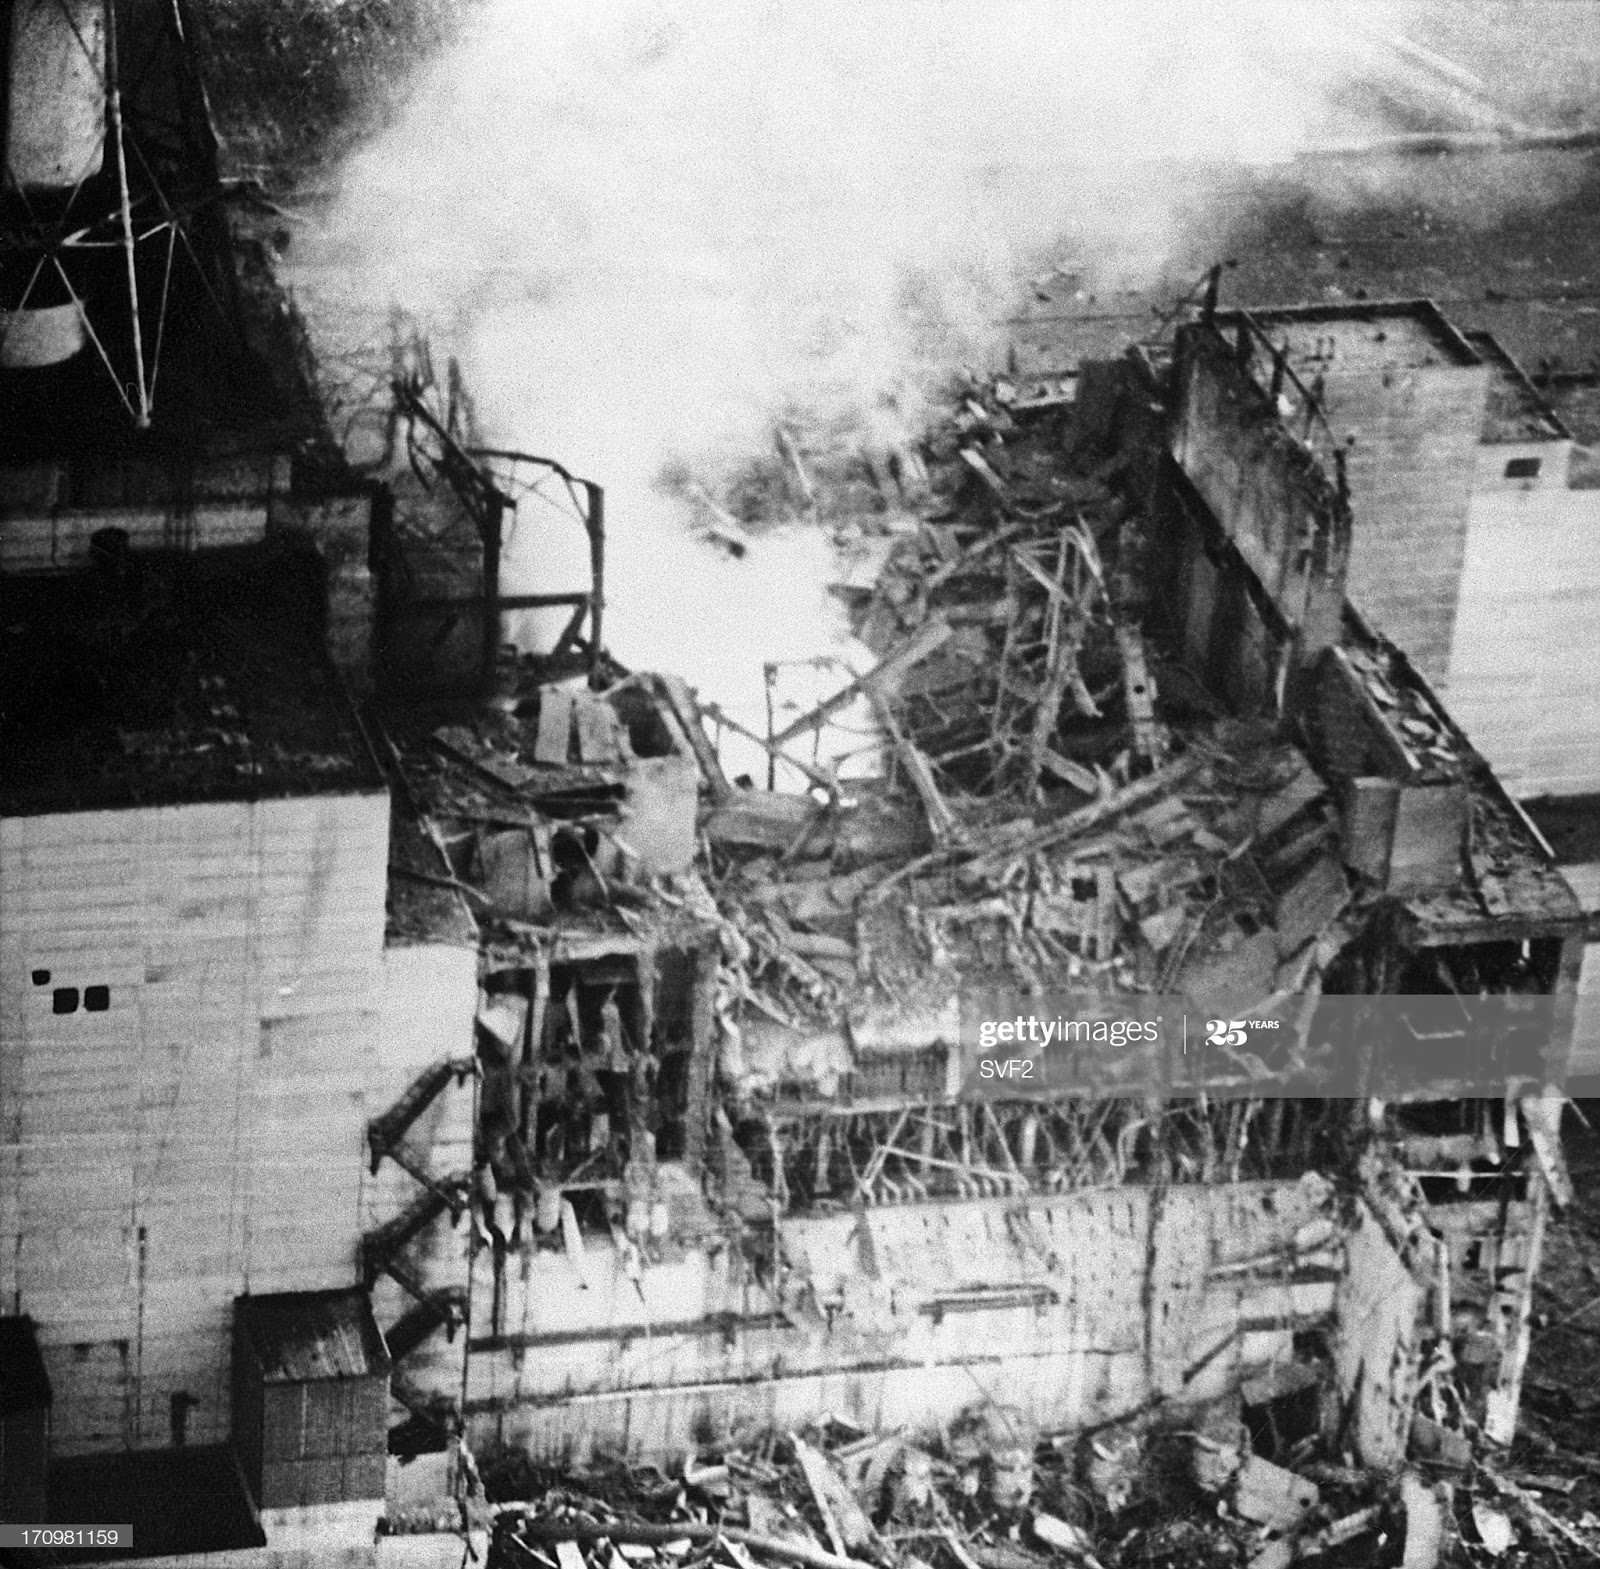 Момент взрыва аэс. Авария на Чернобыльской АЭС 1986. 4 Энергоблок ЧАЭС 1986. ЧАЭС реактор 1986. Чернобыльская АЭС катастрофа 26 апреля 1986.